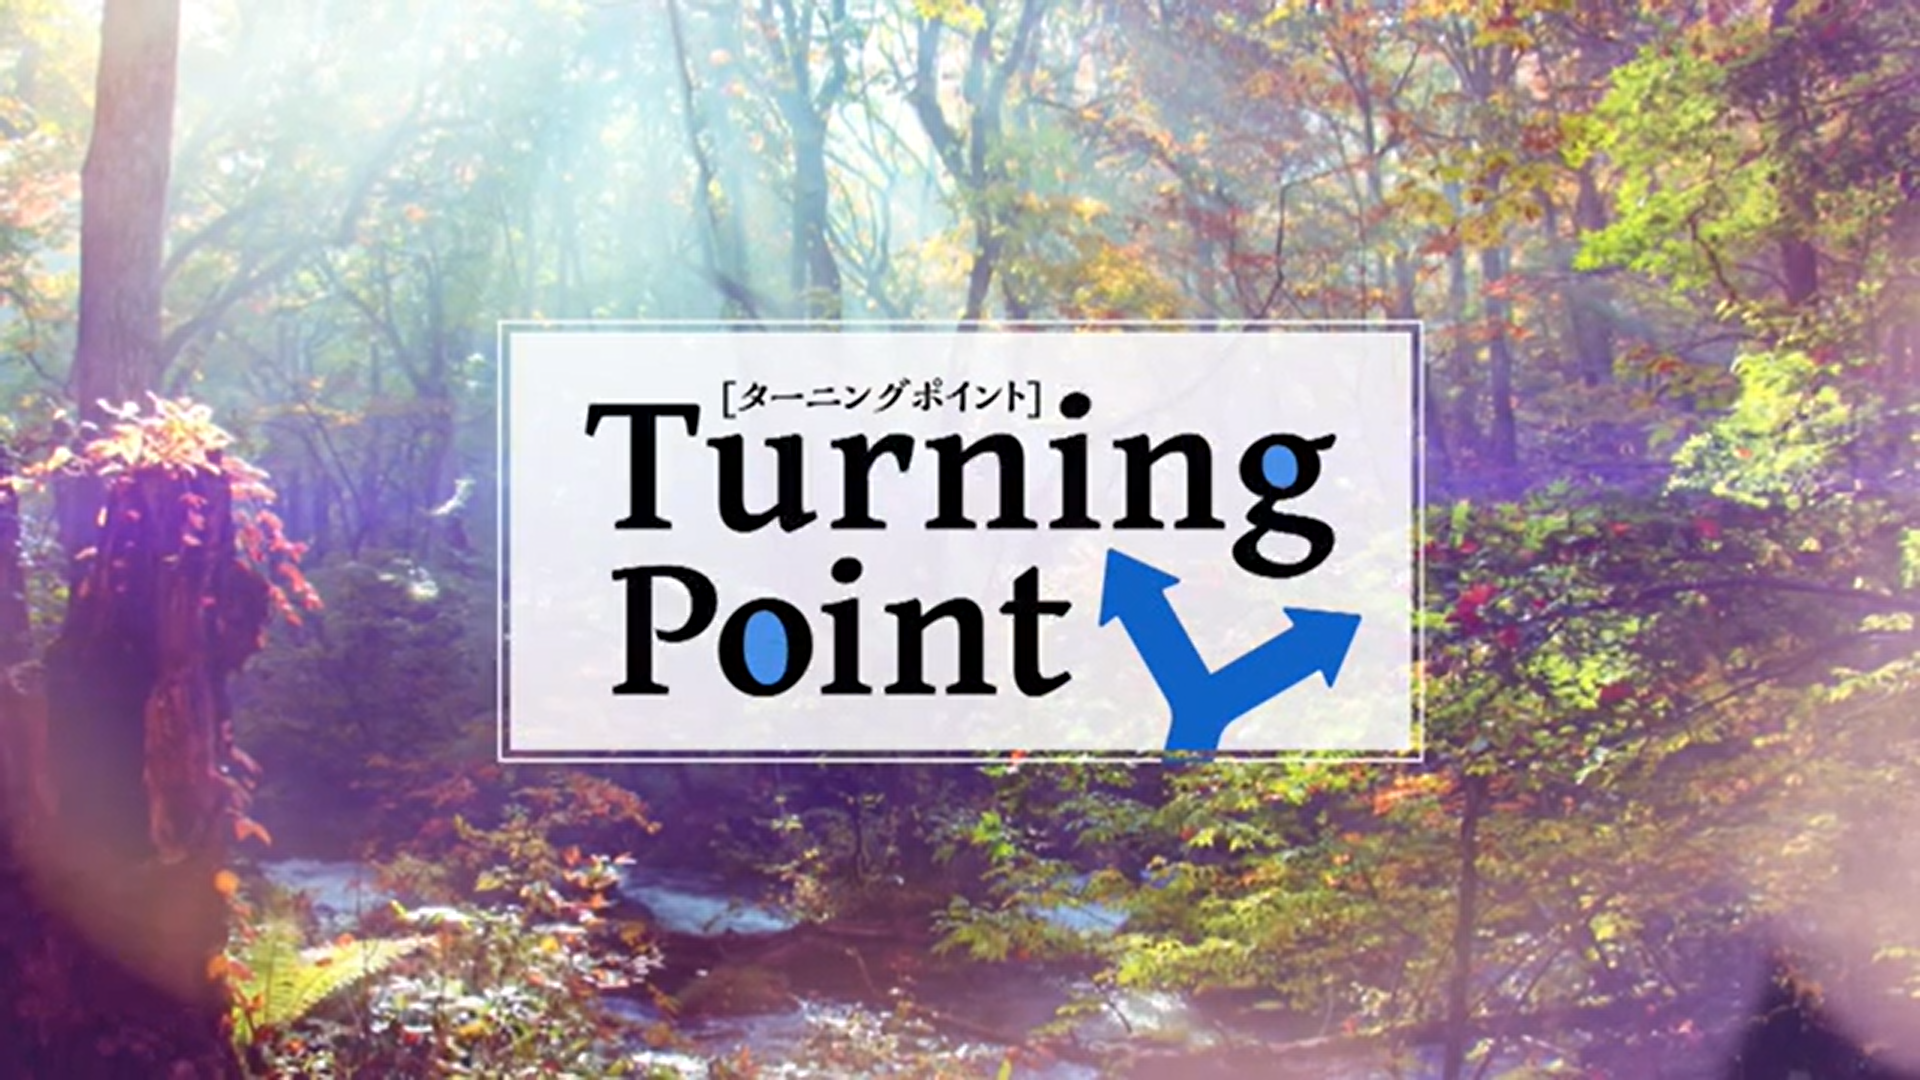 TBS 系列 / ATV 青森テレビ「 TurningPoint  」に出演しました。